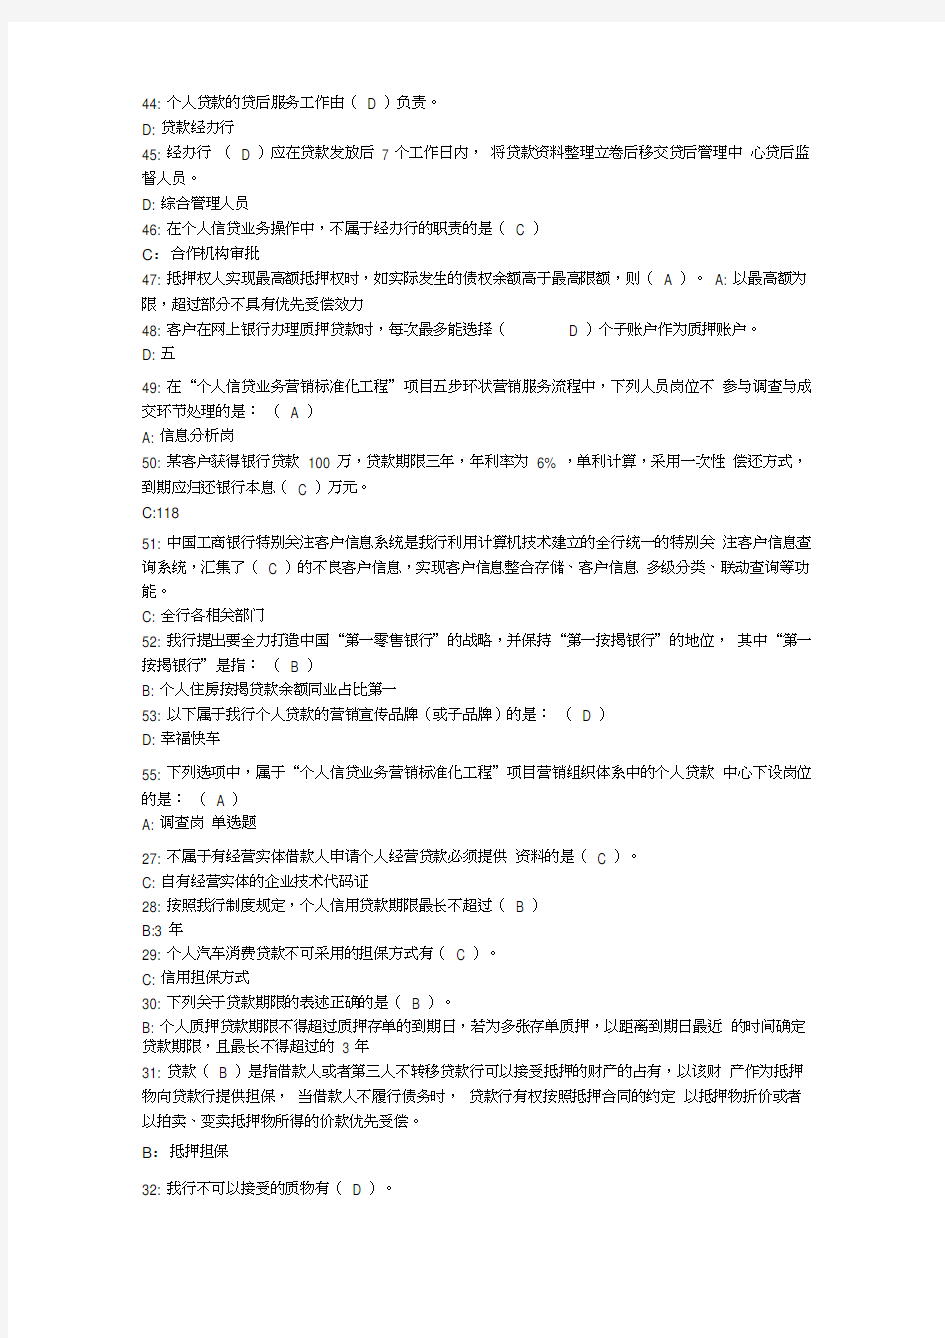 中国工商银行个人信贷营销人员岗位资格考试卷